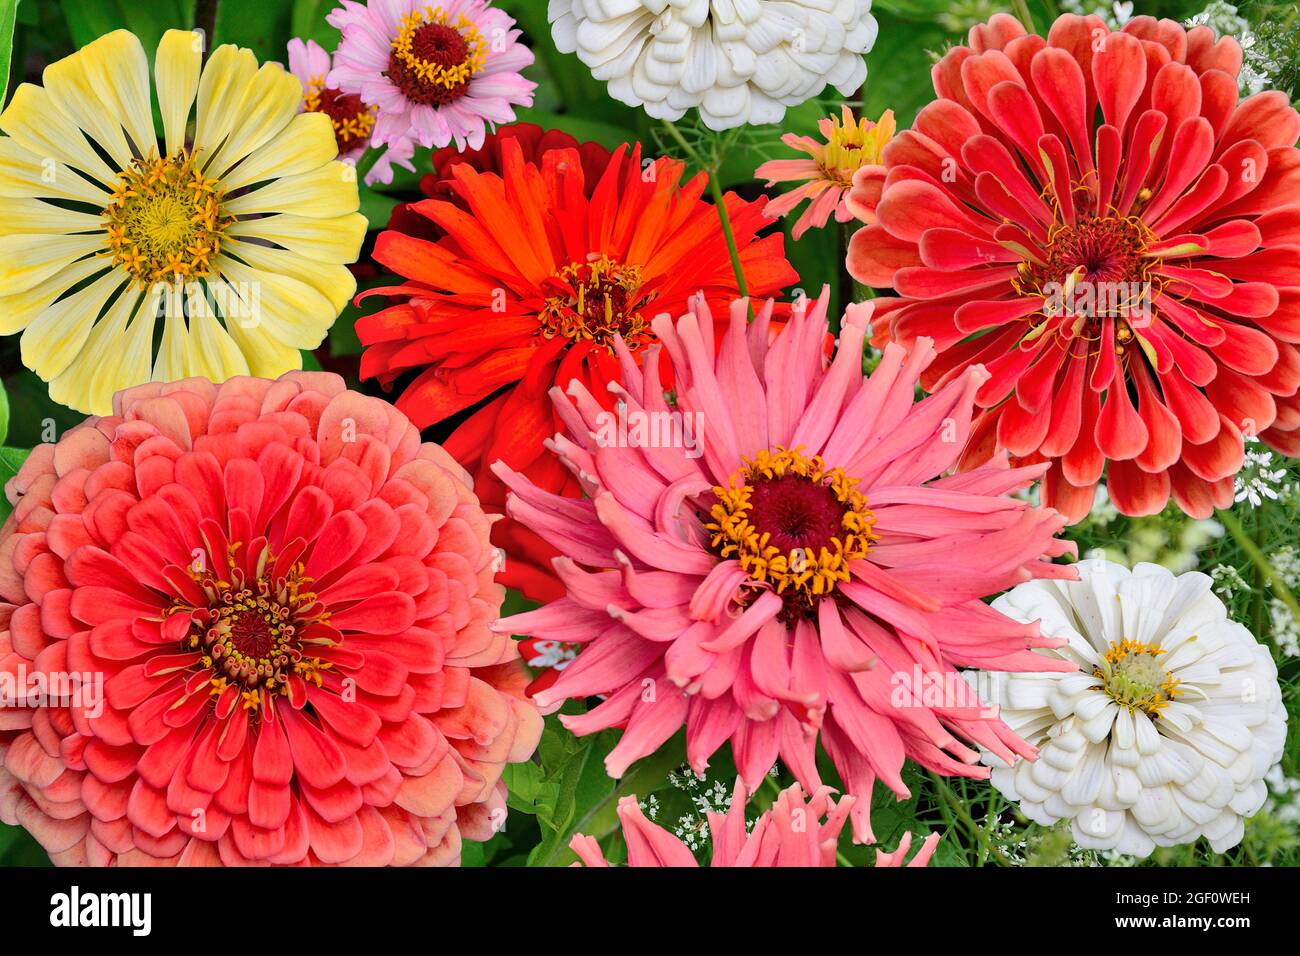 Blumenstrauß mit bunten Zinnien-Blüten aus nächster Nähe. Sommer floralen Hintergrund mit zarten flauschigen roten, rosa, gelben und weißen Zinnien. Festliche Grußkarte Stockfoto